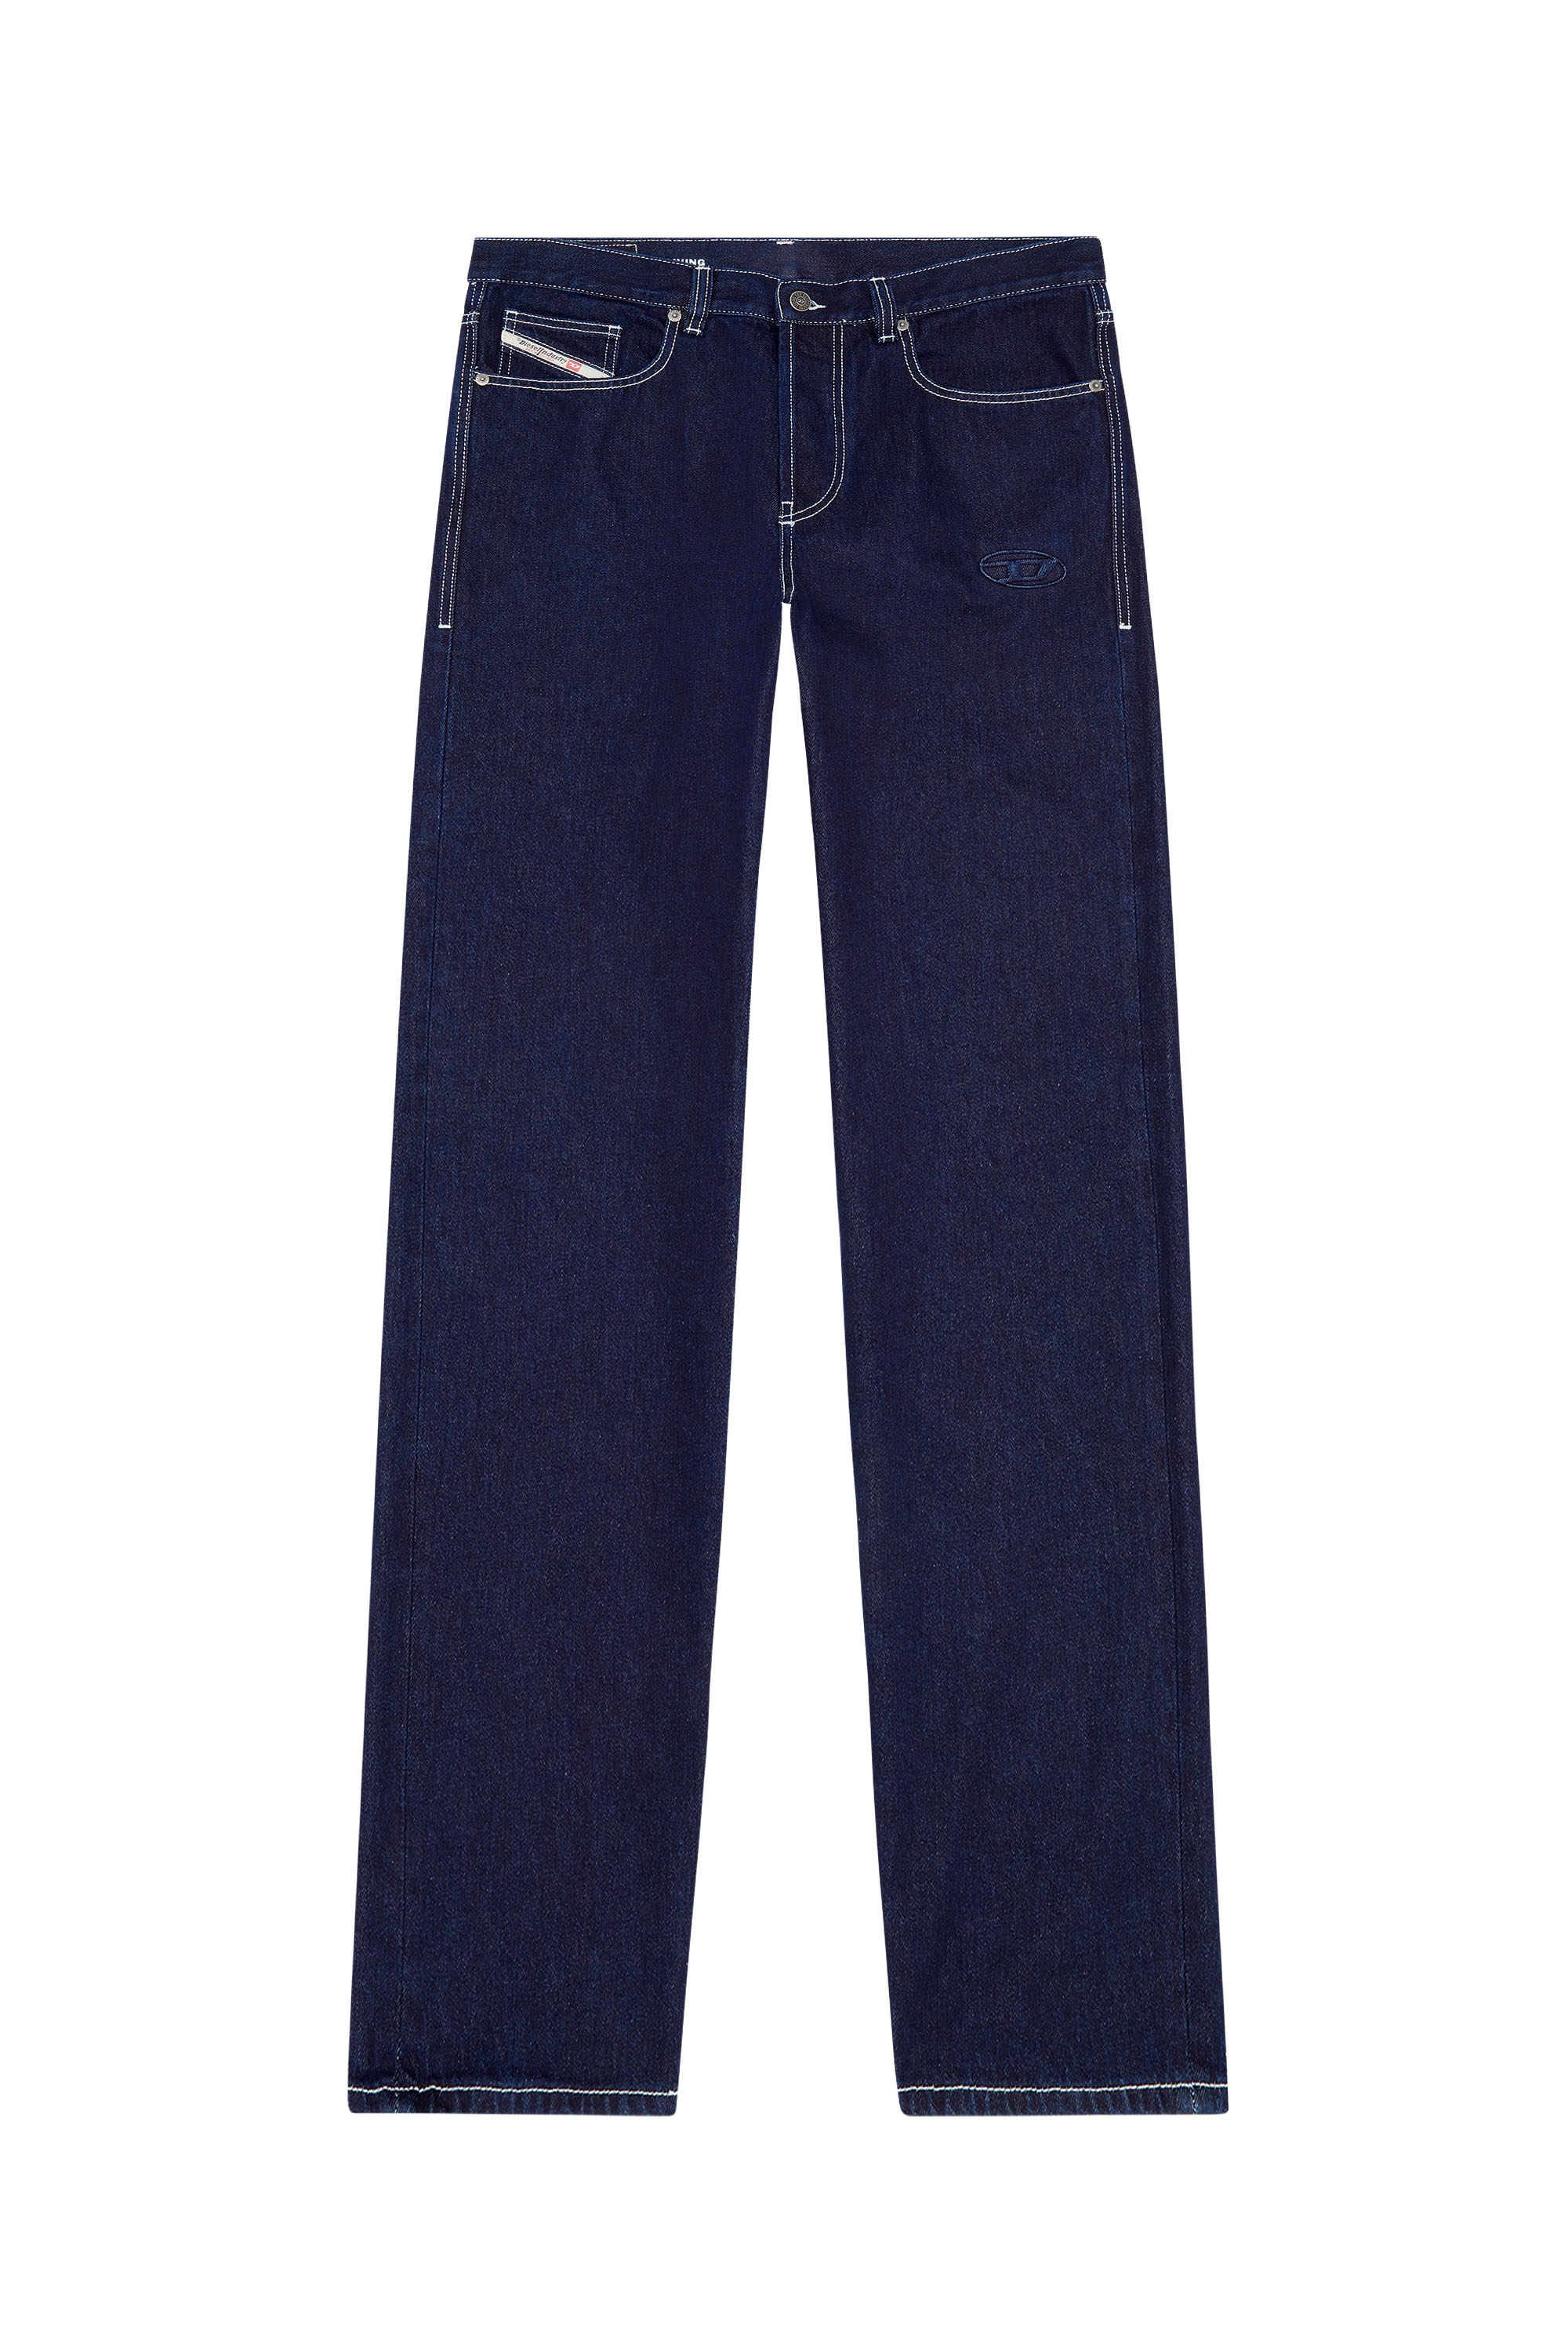 2010 D-Macs 09F19 Straight Jeans, Dark Blue - Jeans